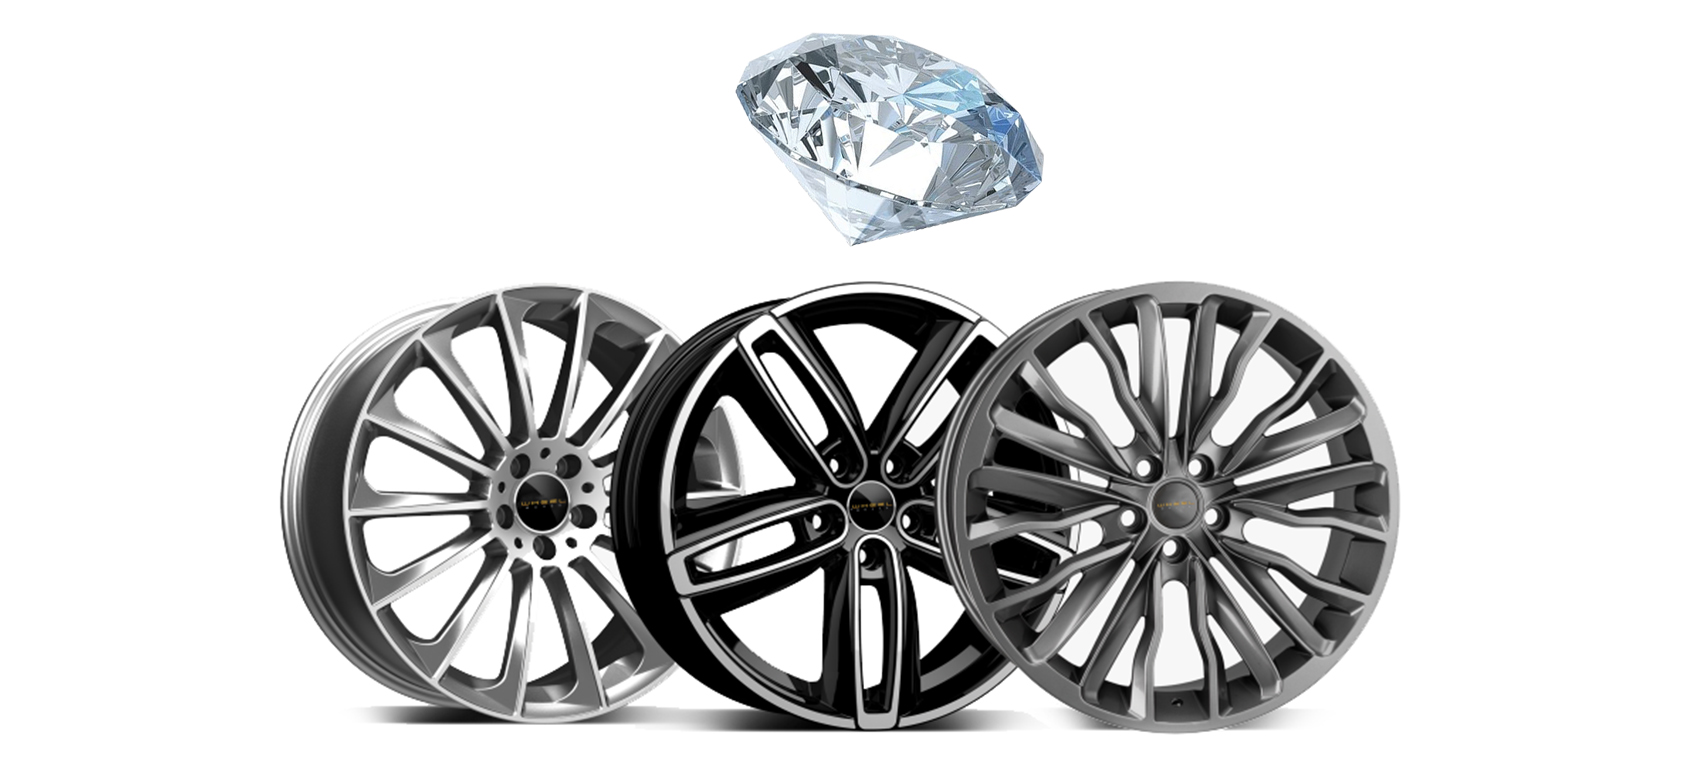 diamond cut alloy wheels